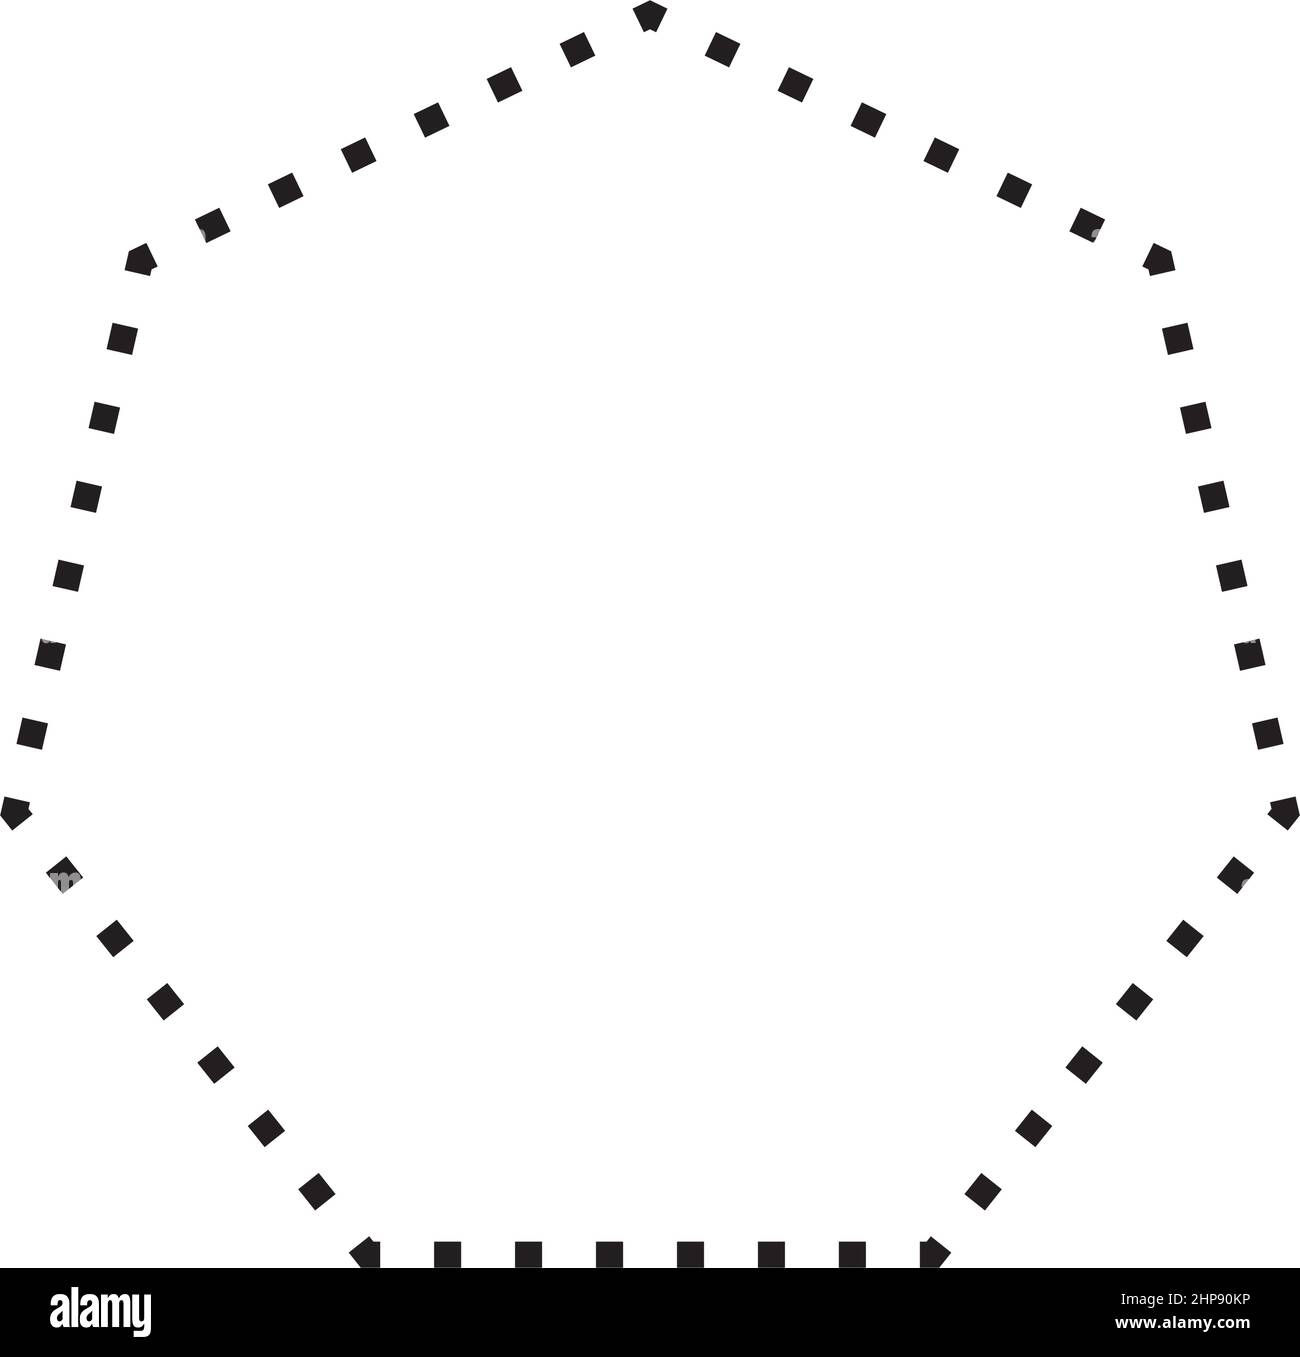 Icona vettoriale a forma di eptagono con simbolo punteggiato per un elemento ui di grafica creativa in un'illustrazione con pittogramma Illustrazione Vettoriale